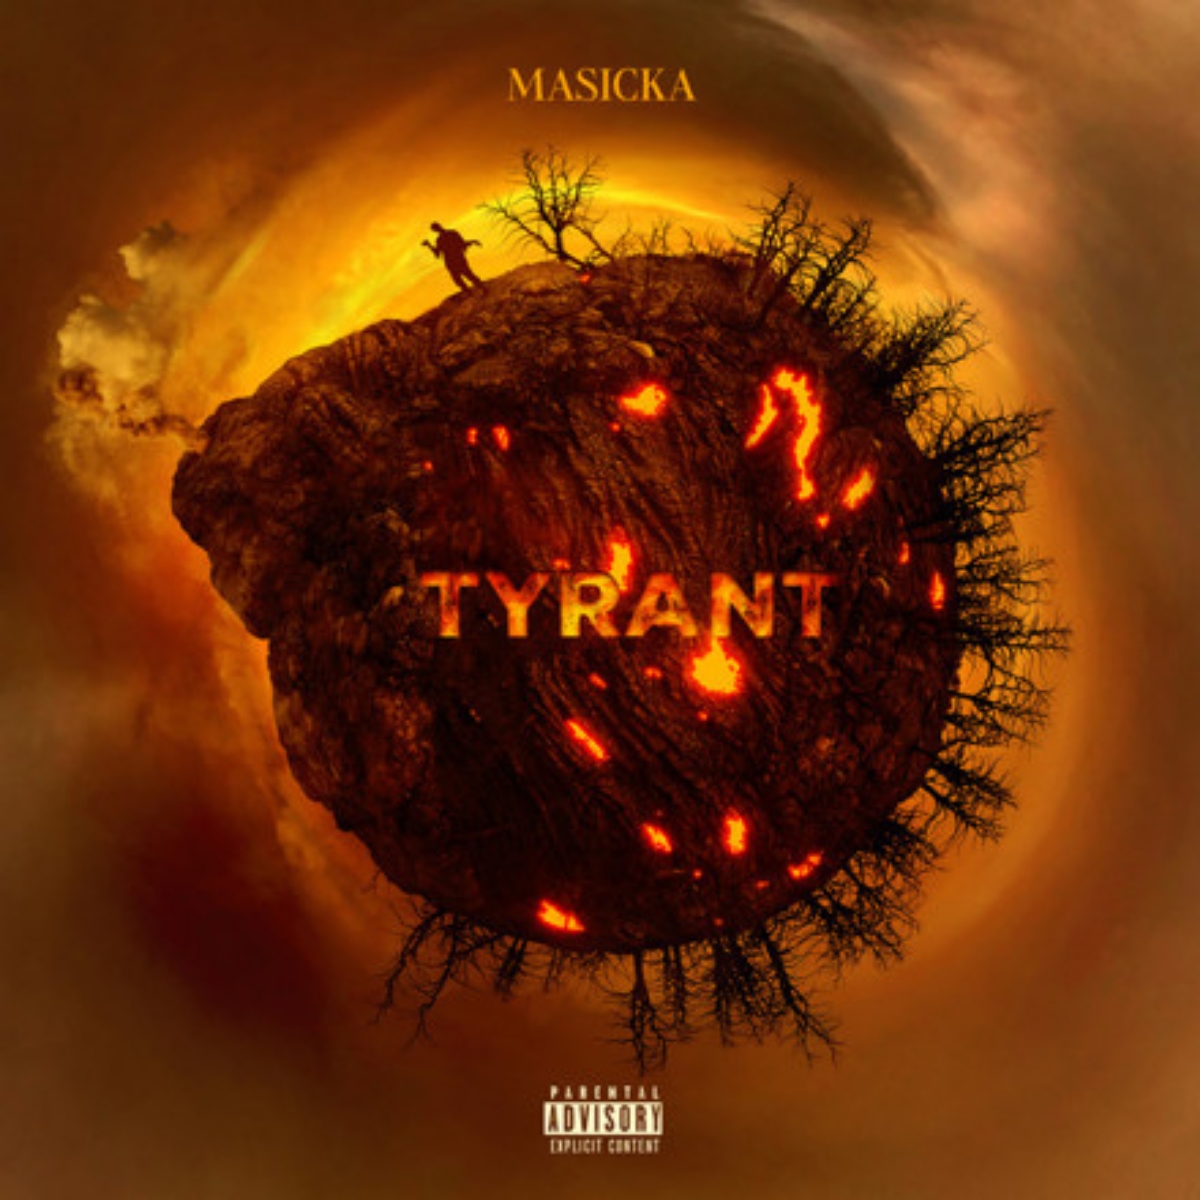 Masicka - Tyrant